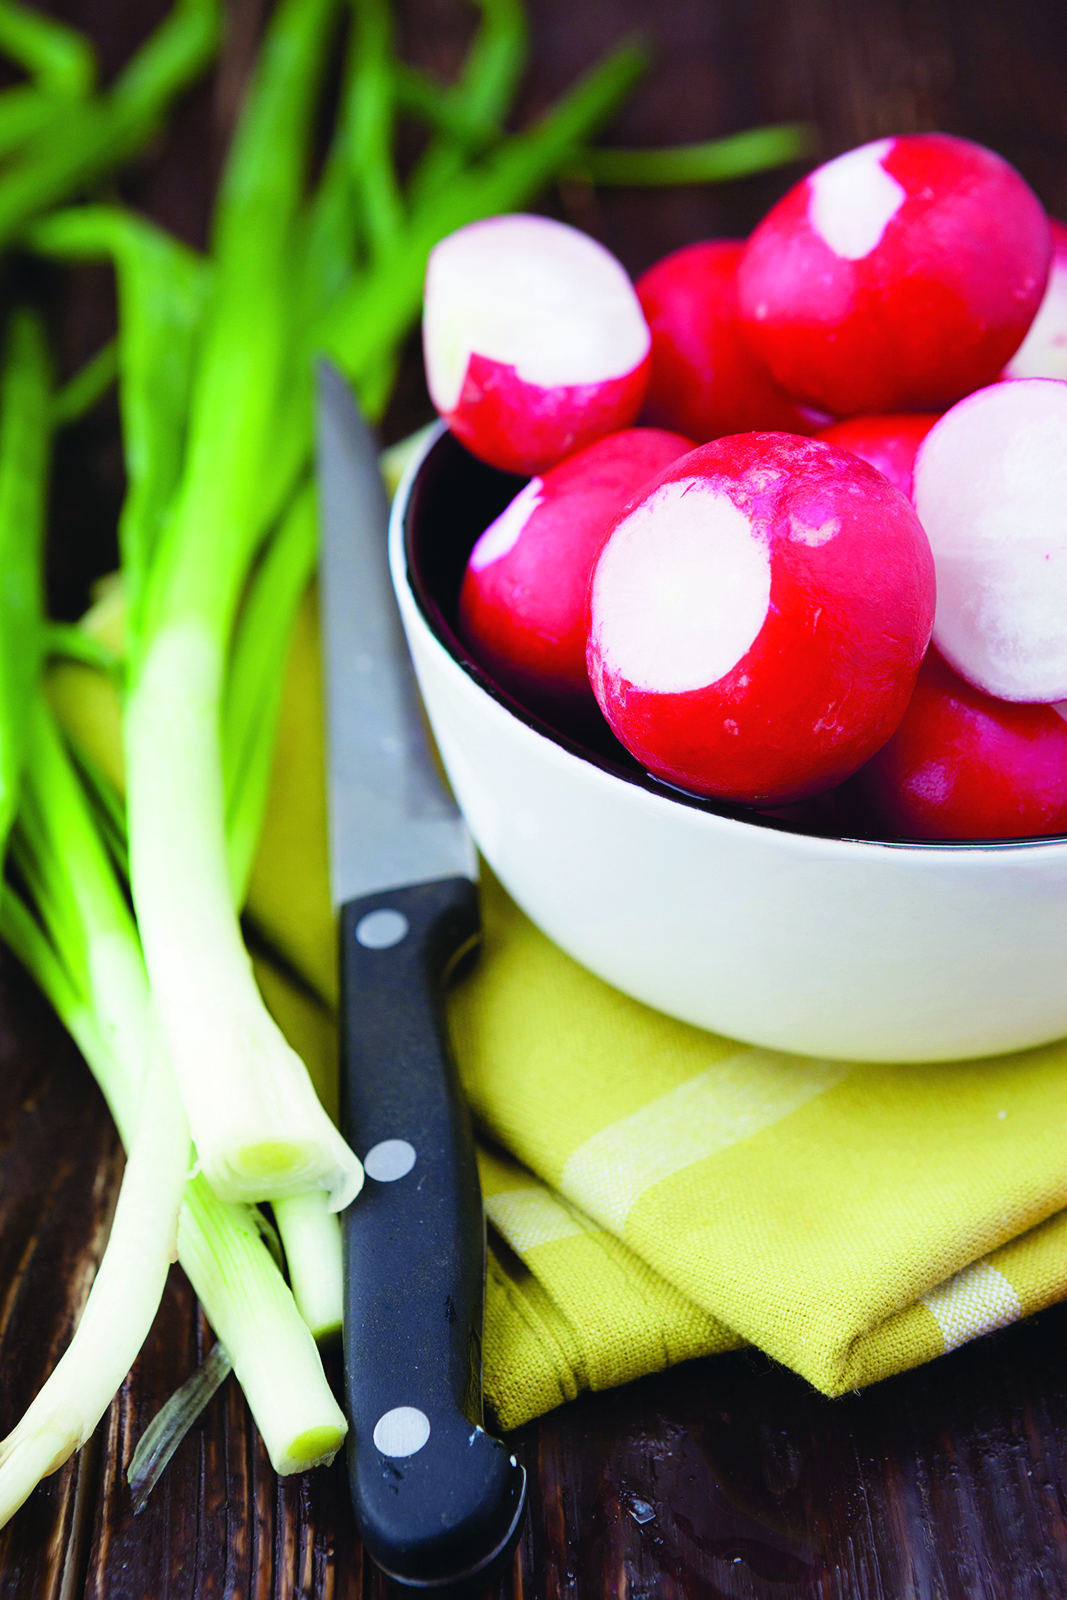 6 conseils pour maximiser la durée de vie de vos fruits et légumes